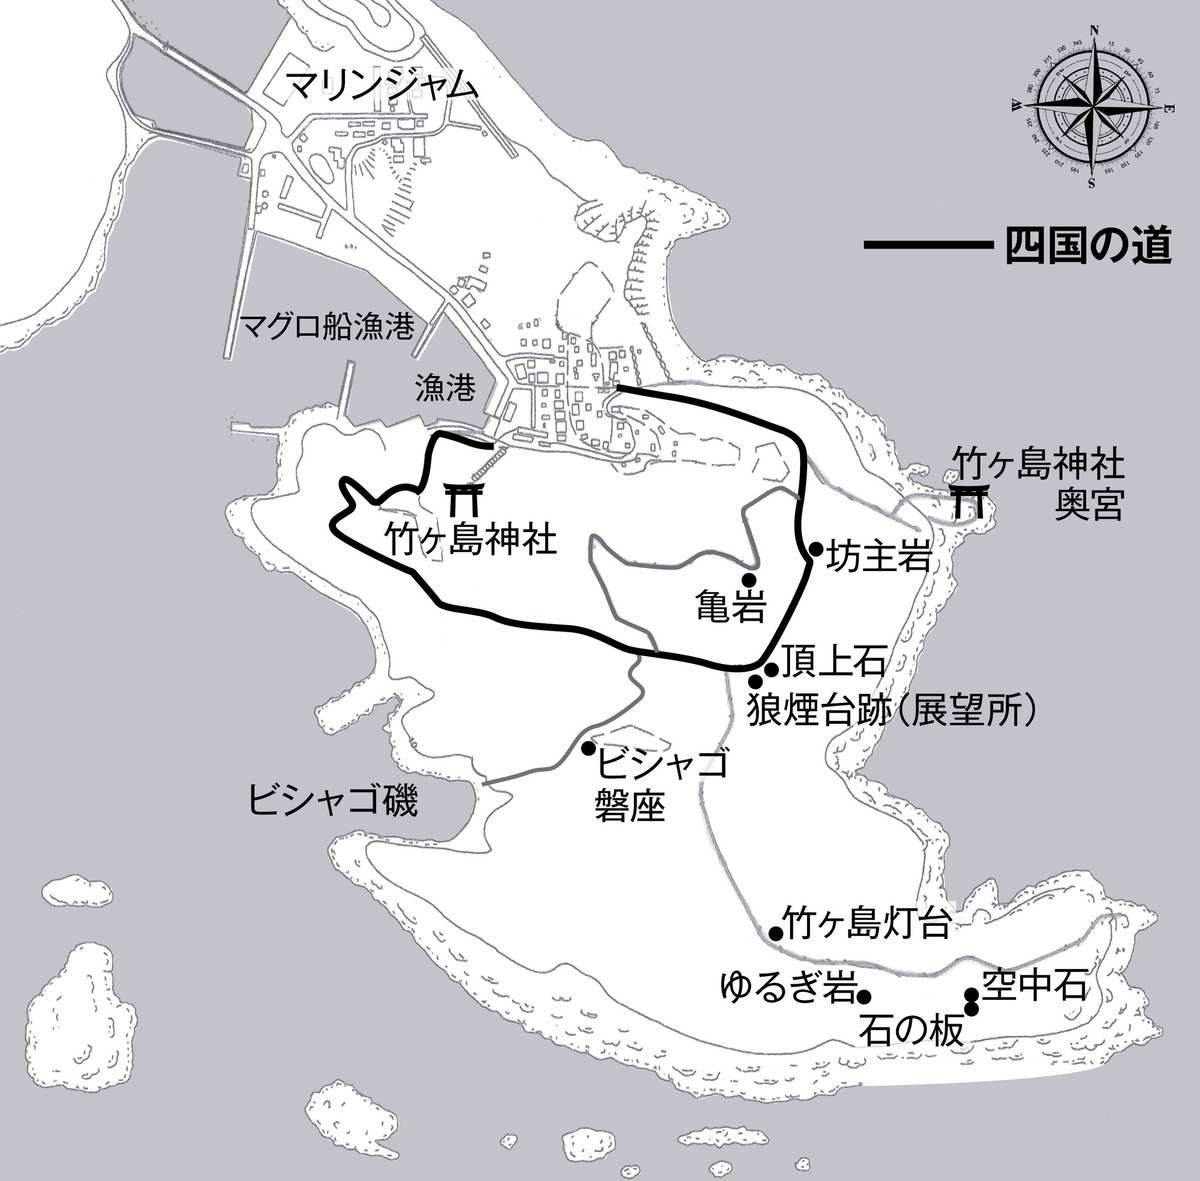 Map of Takegashima